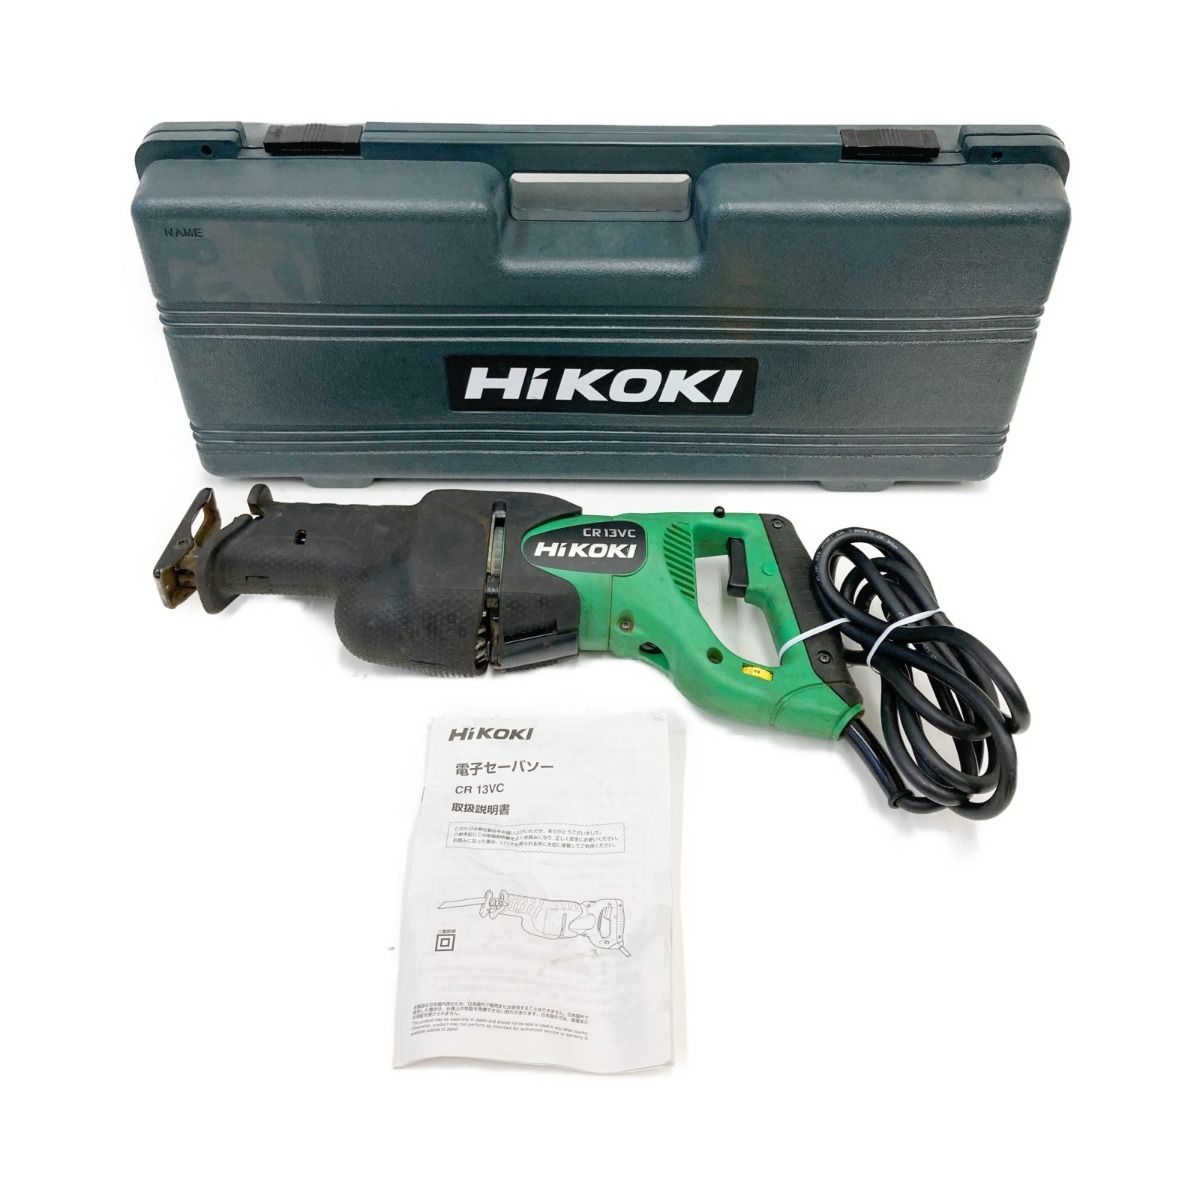  HiKOKI ハイコーキ 10.8V コードレスセーバソー CR12DA(ES) LEDライト内蔵 セーバソー CR12DA 日立工機 レシプロソー コードレス - 4